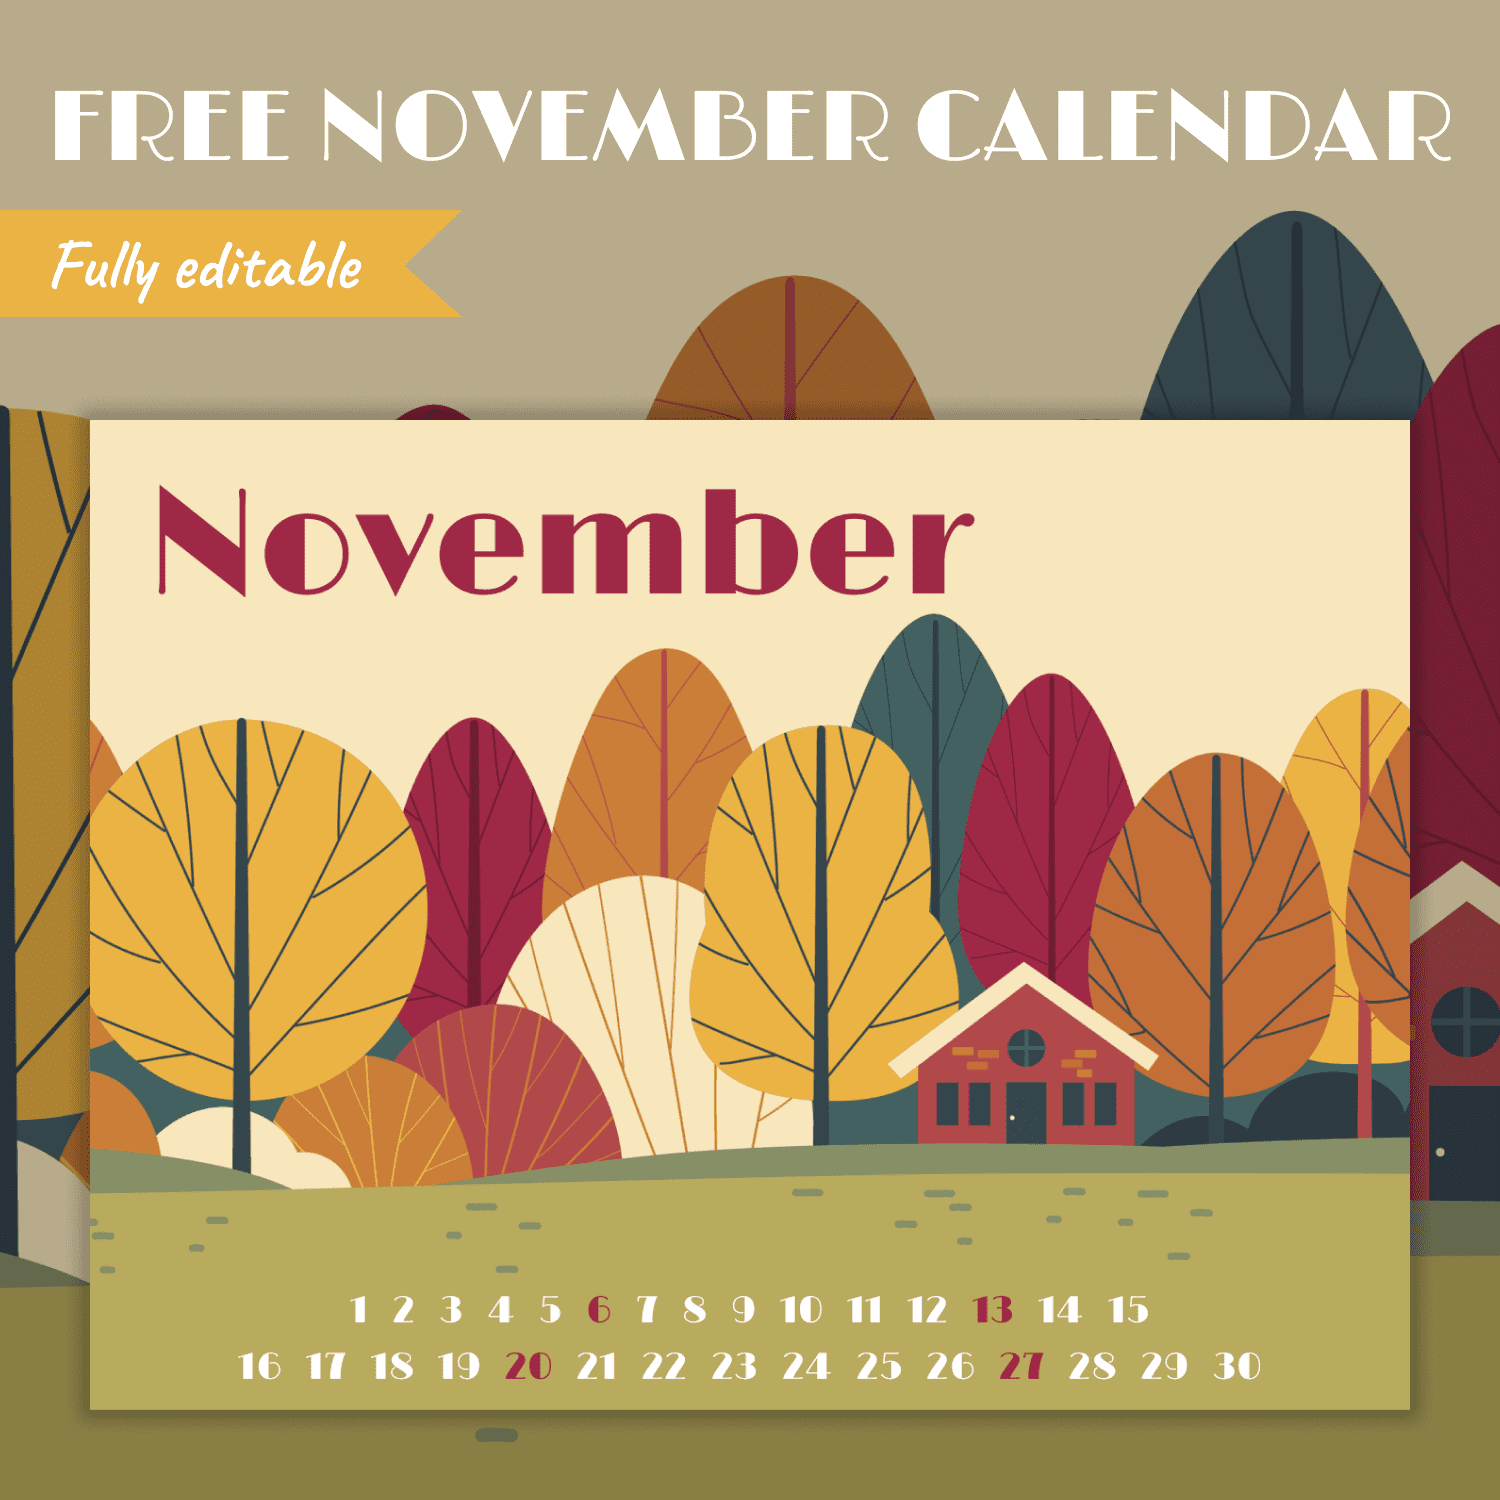 Title slide of the free calendar for November.